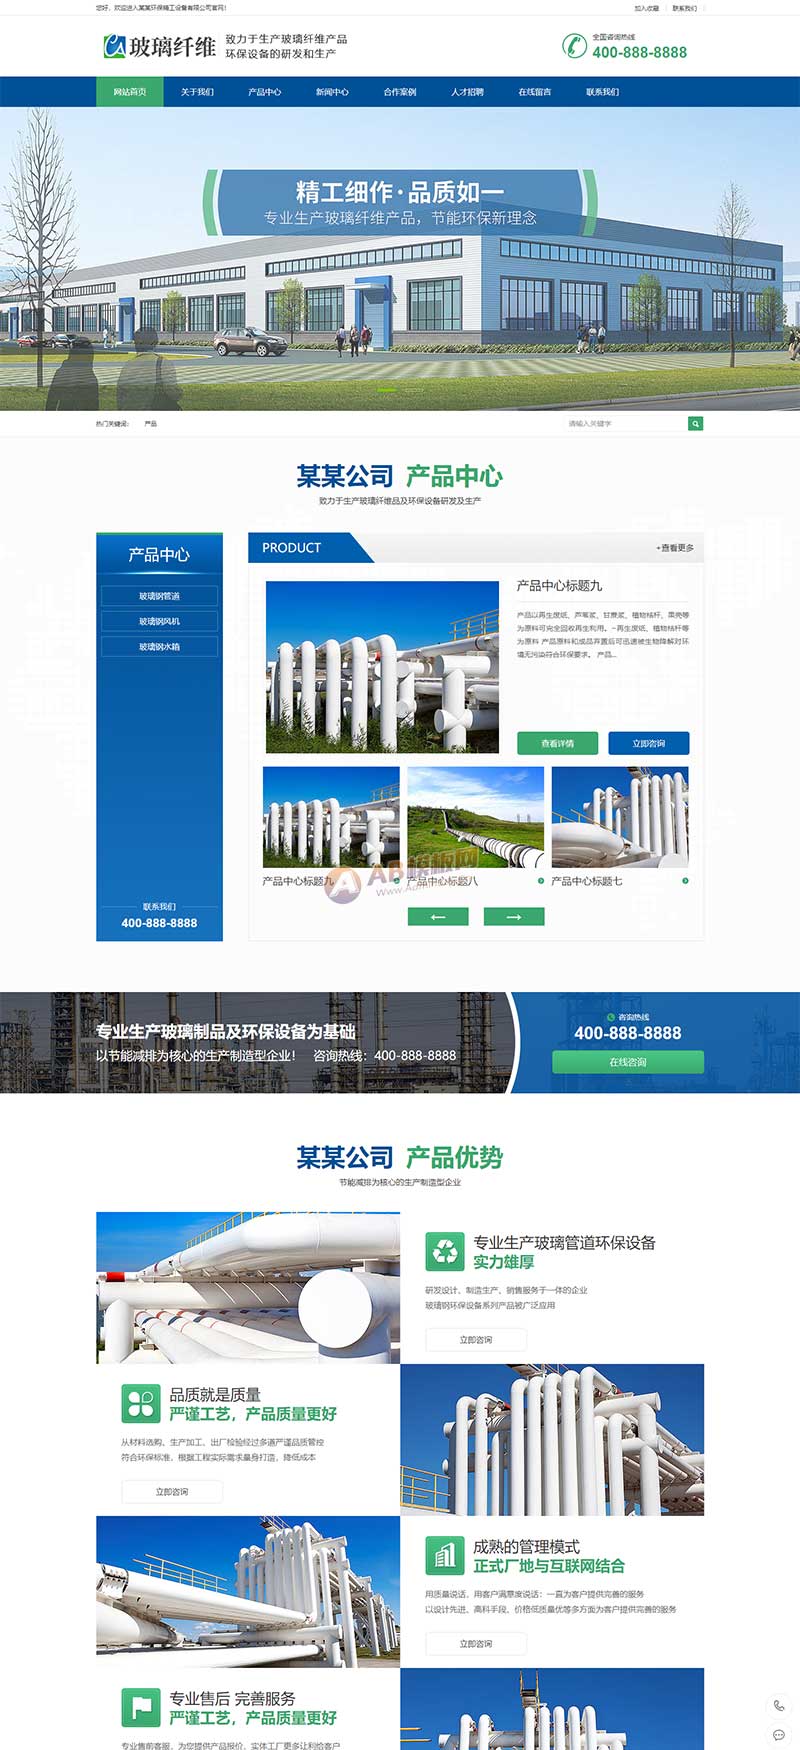 蓝色玻璃纤维制品网站模板 营销型环保设备网站源码下载